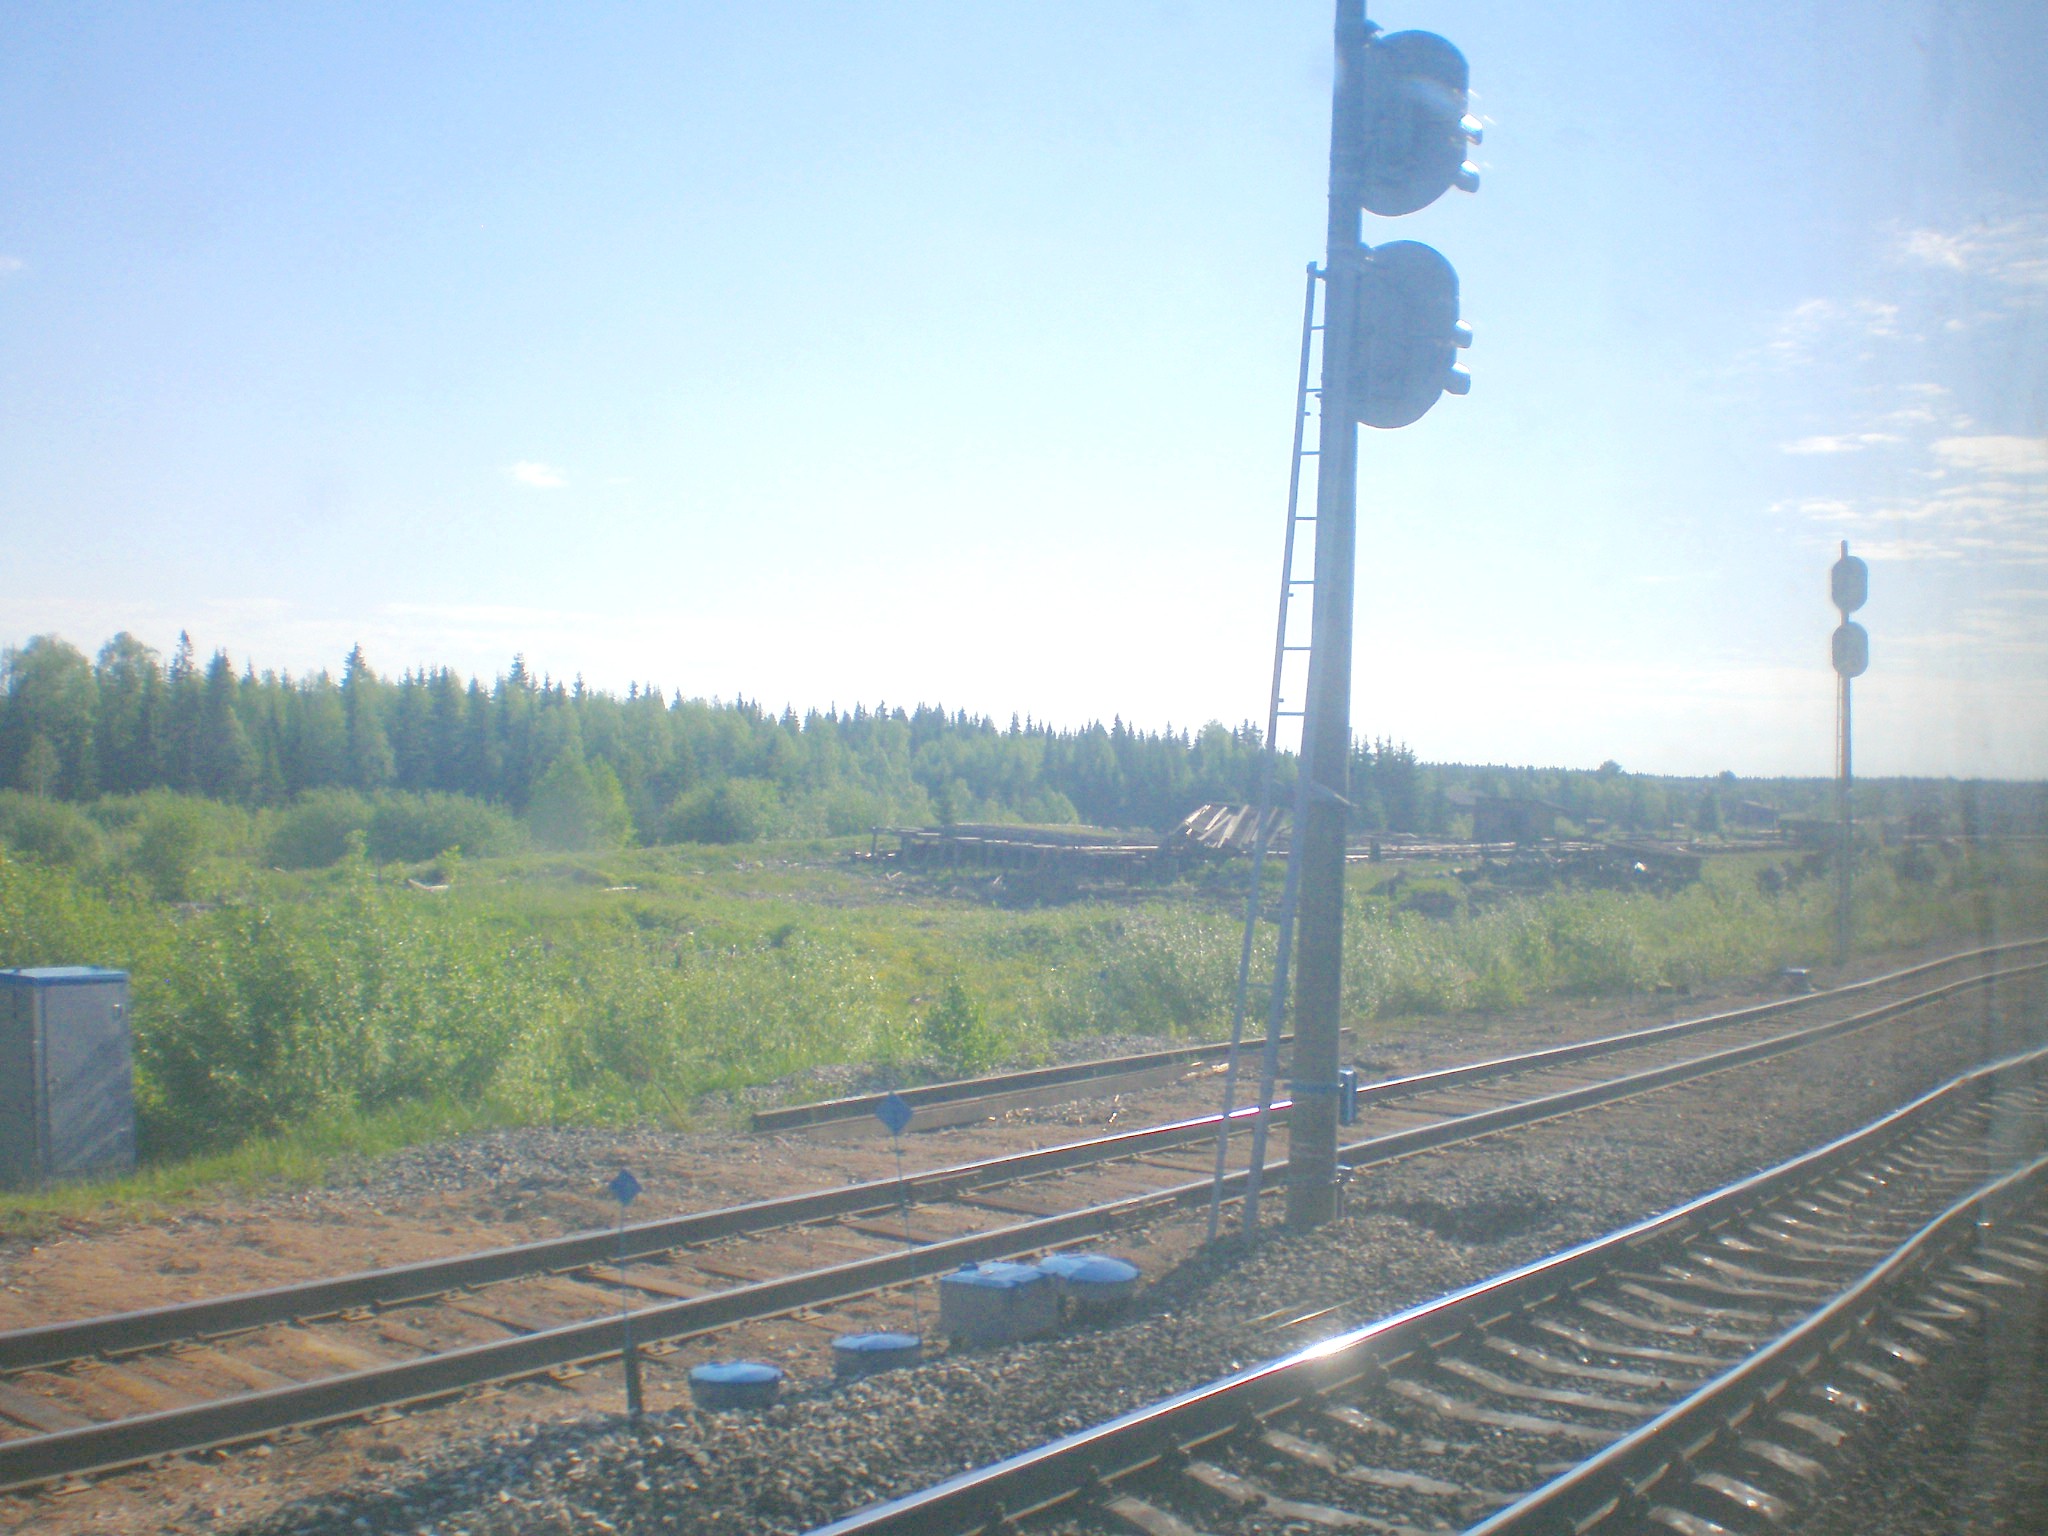 Узкоколейная железная дорога в Ломоватке  — фотографии, сделанные в 2008 году (часть 1)